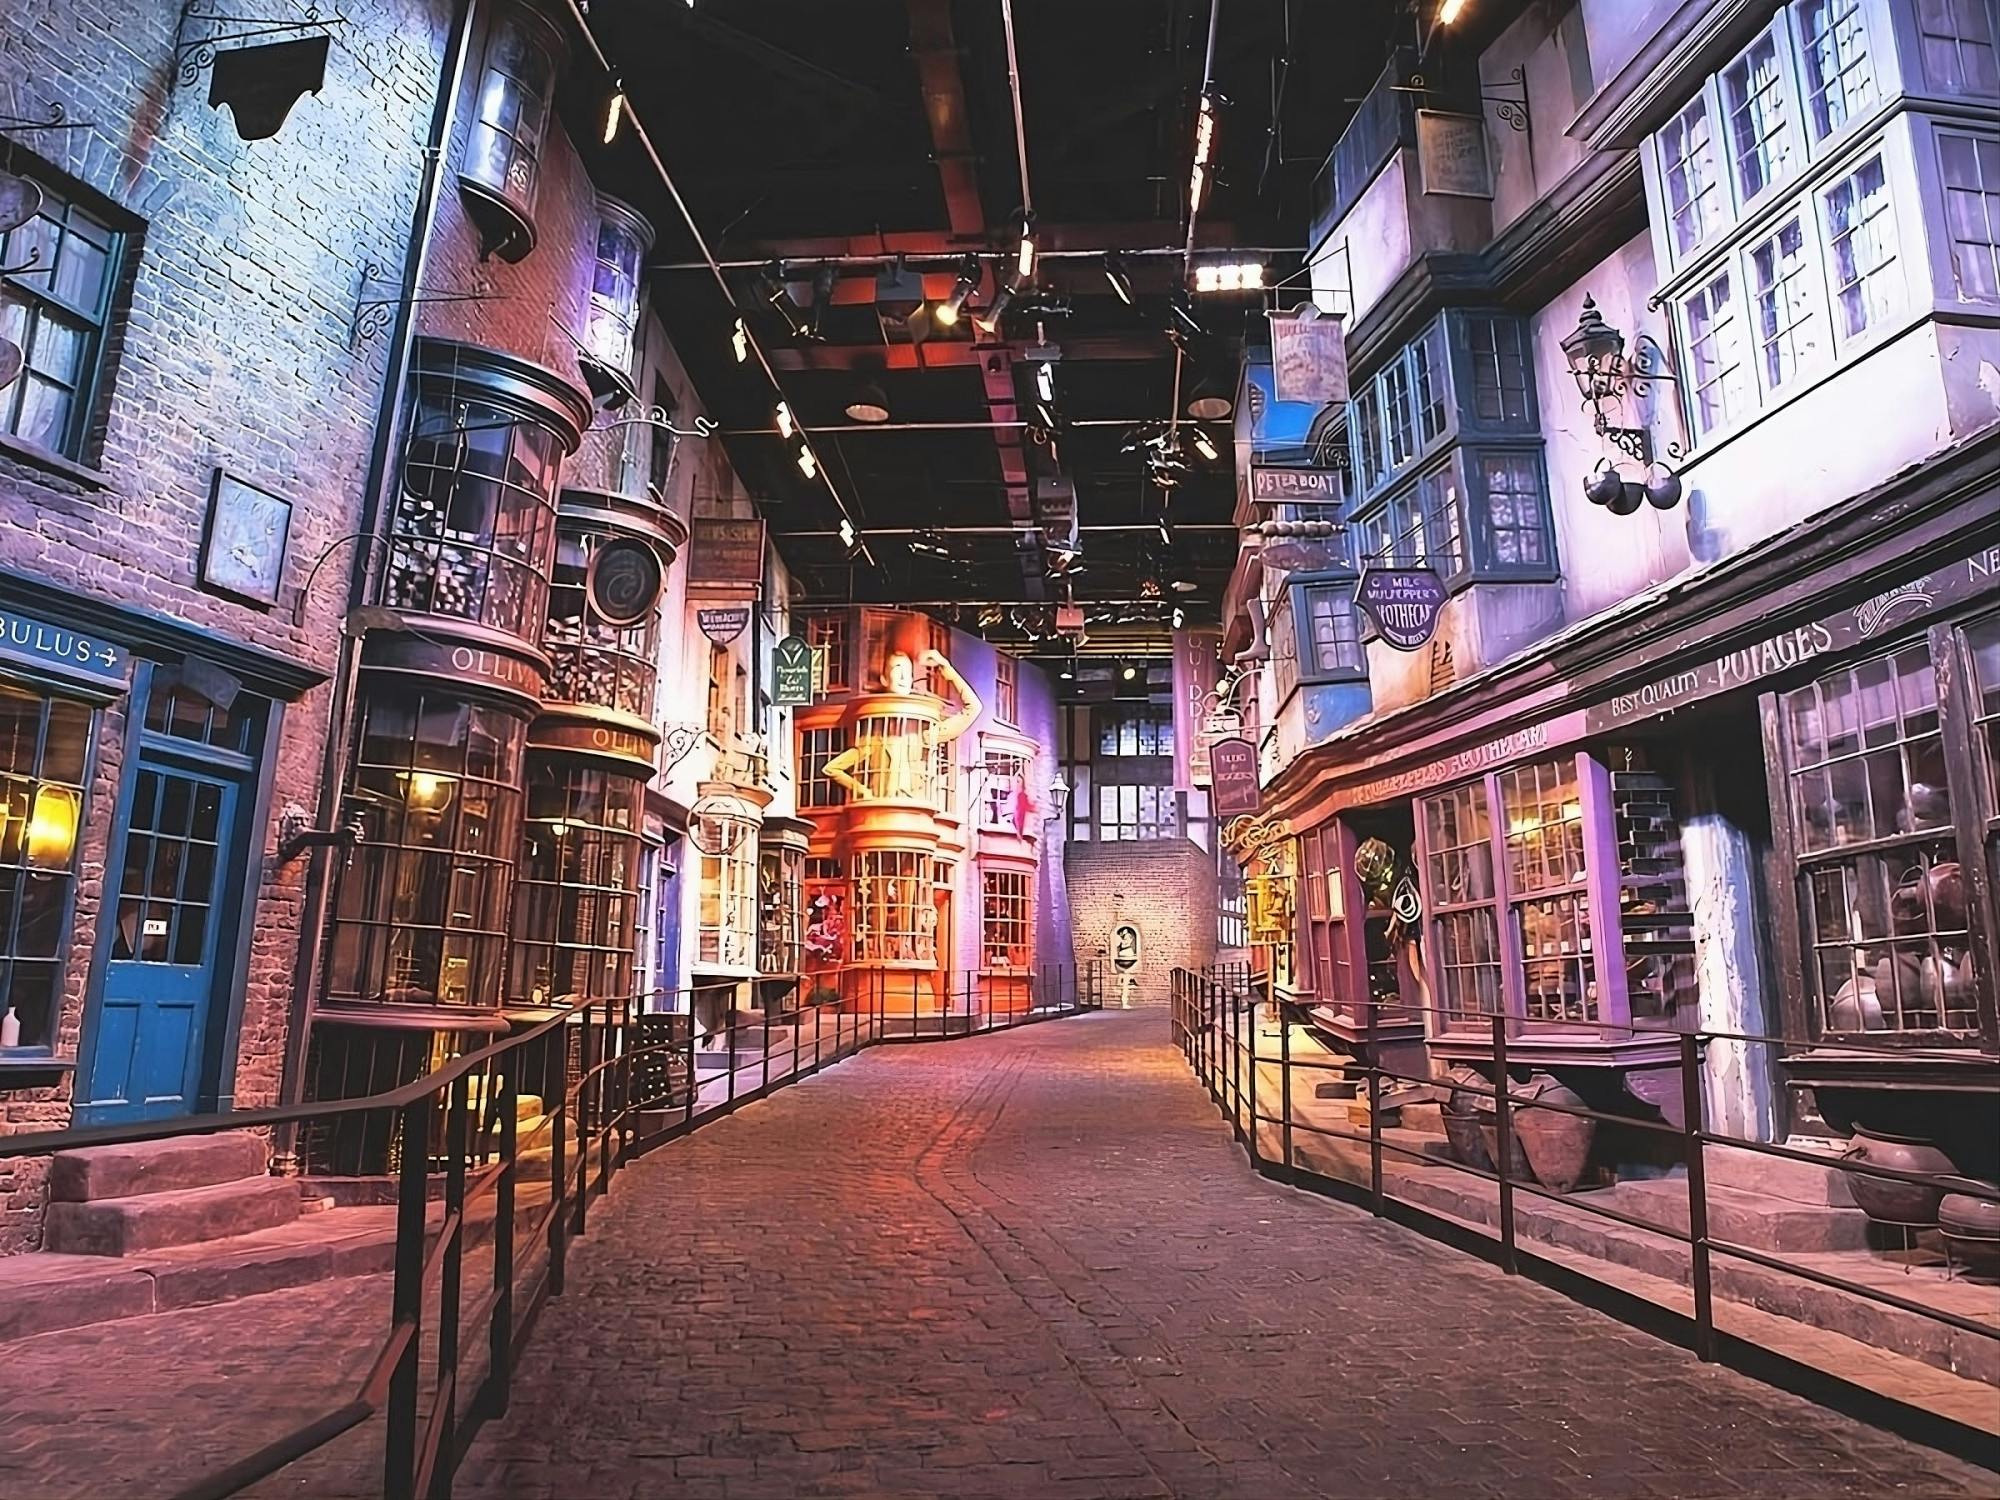 Ab London: Warner Bros. Studiotour London - Eintrittskarte für „The Making of Harry Potter“ und begleiteter Zugtransfer